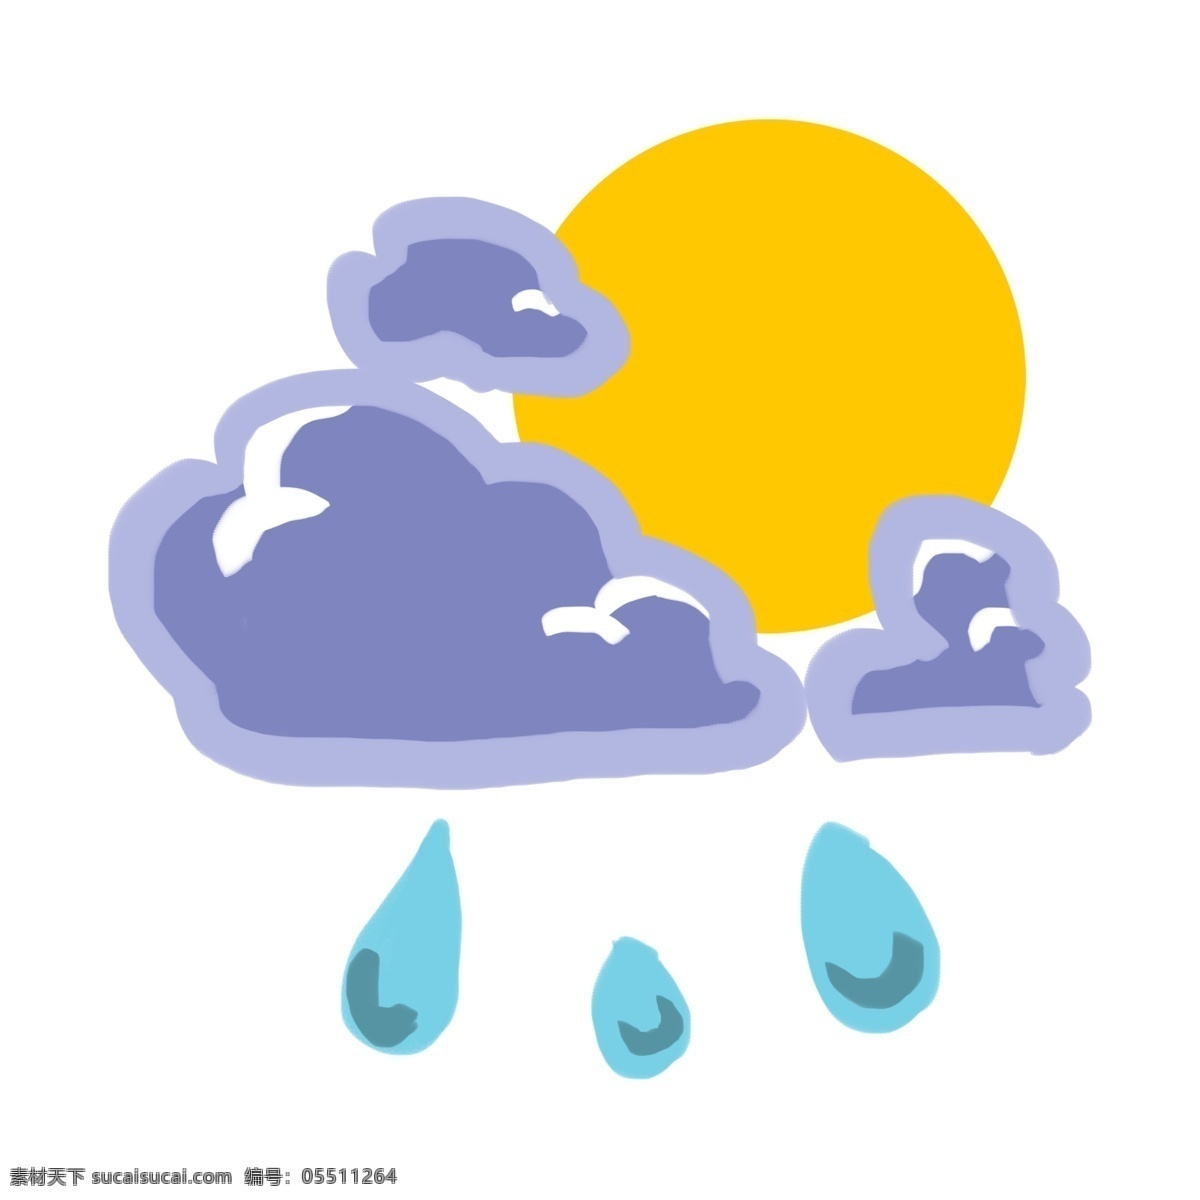 阵雨 天气 图标 插画 阵雨的天气 卡通插画 天气图标 天气插画 气象 下阵雨 阵雨插画 太阳 雨滴